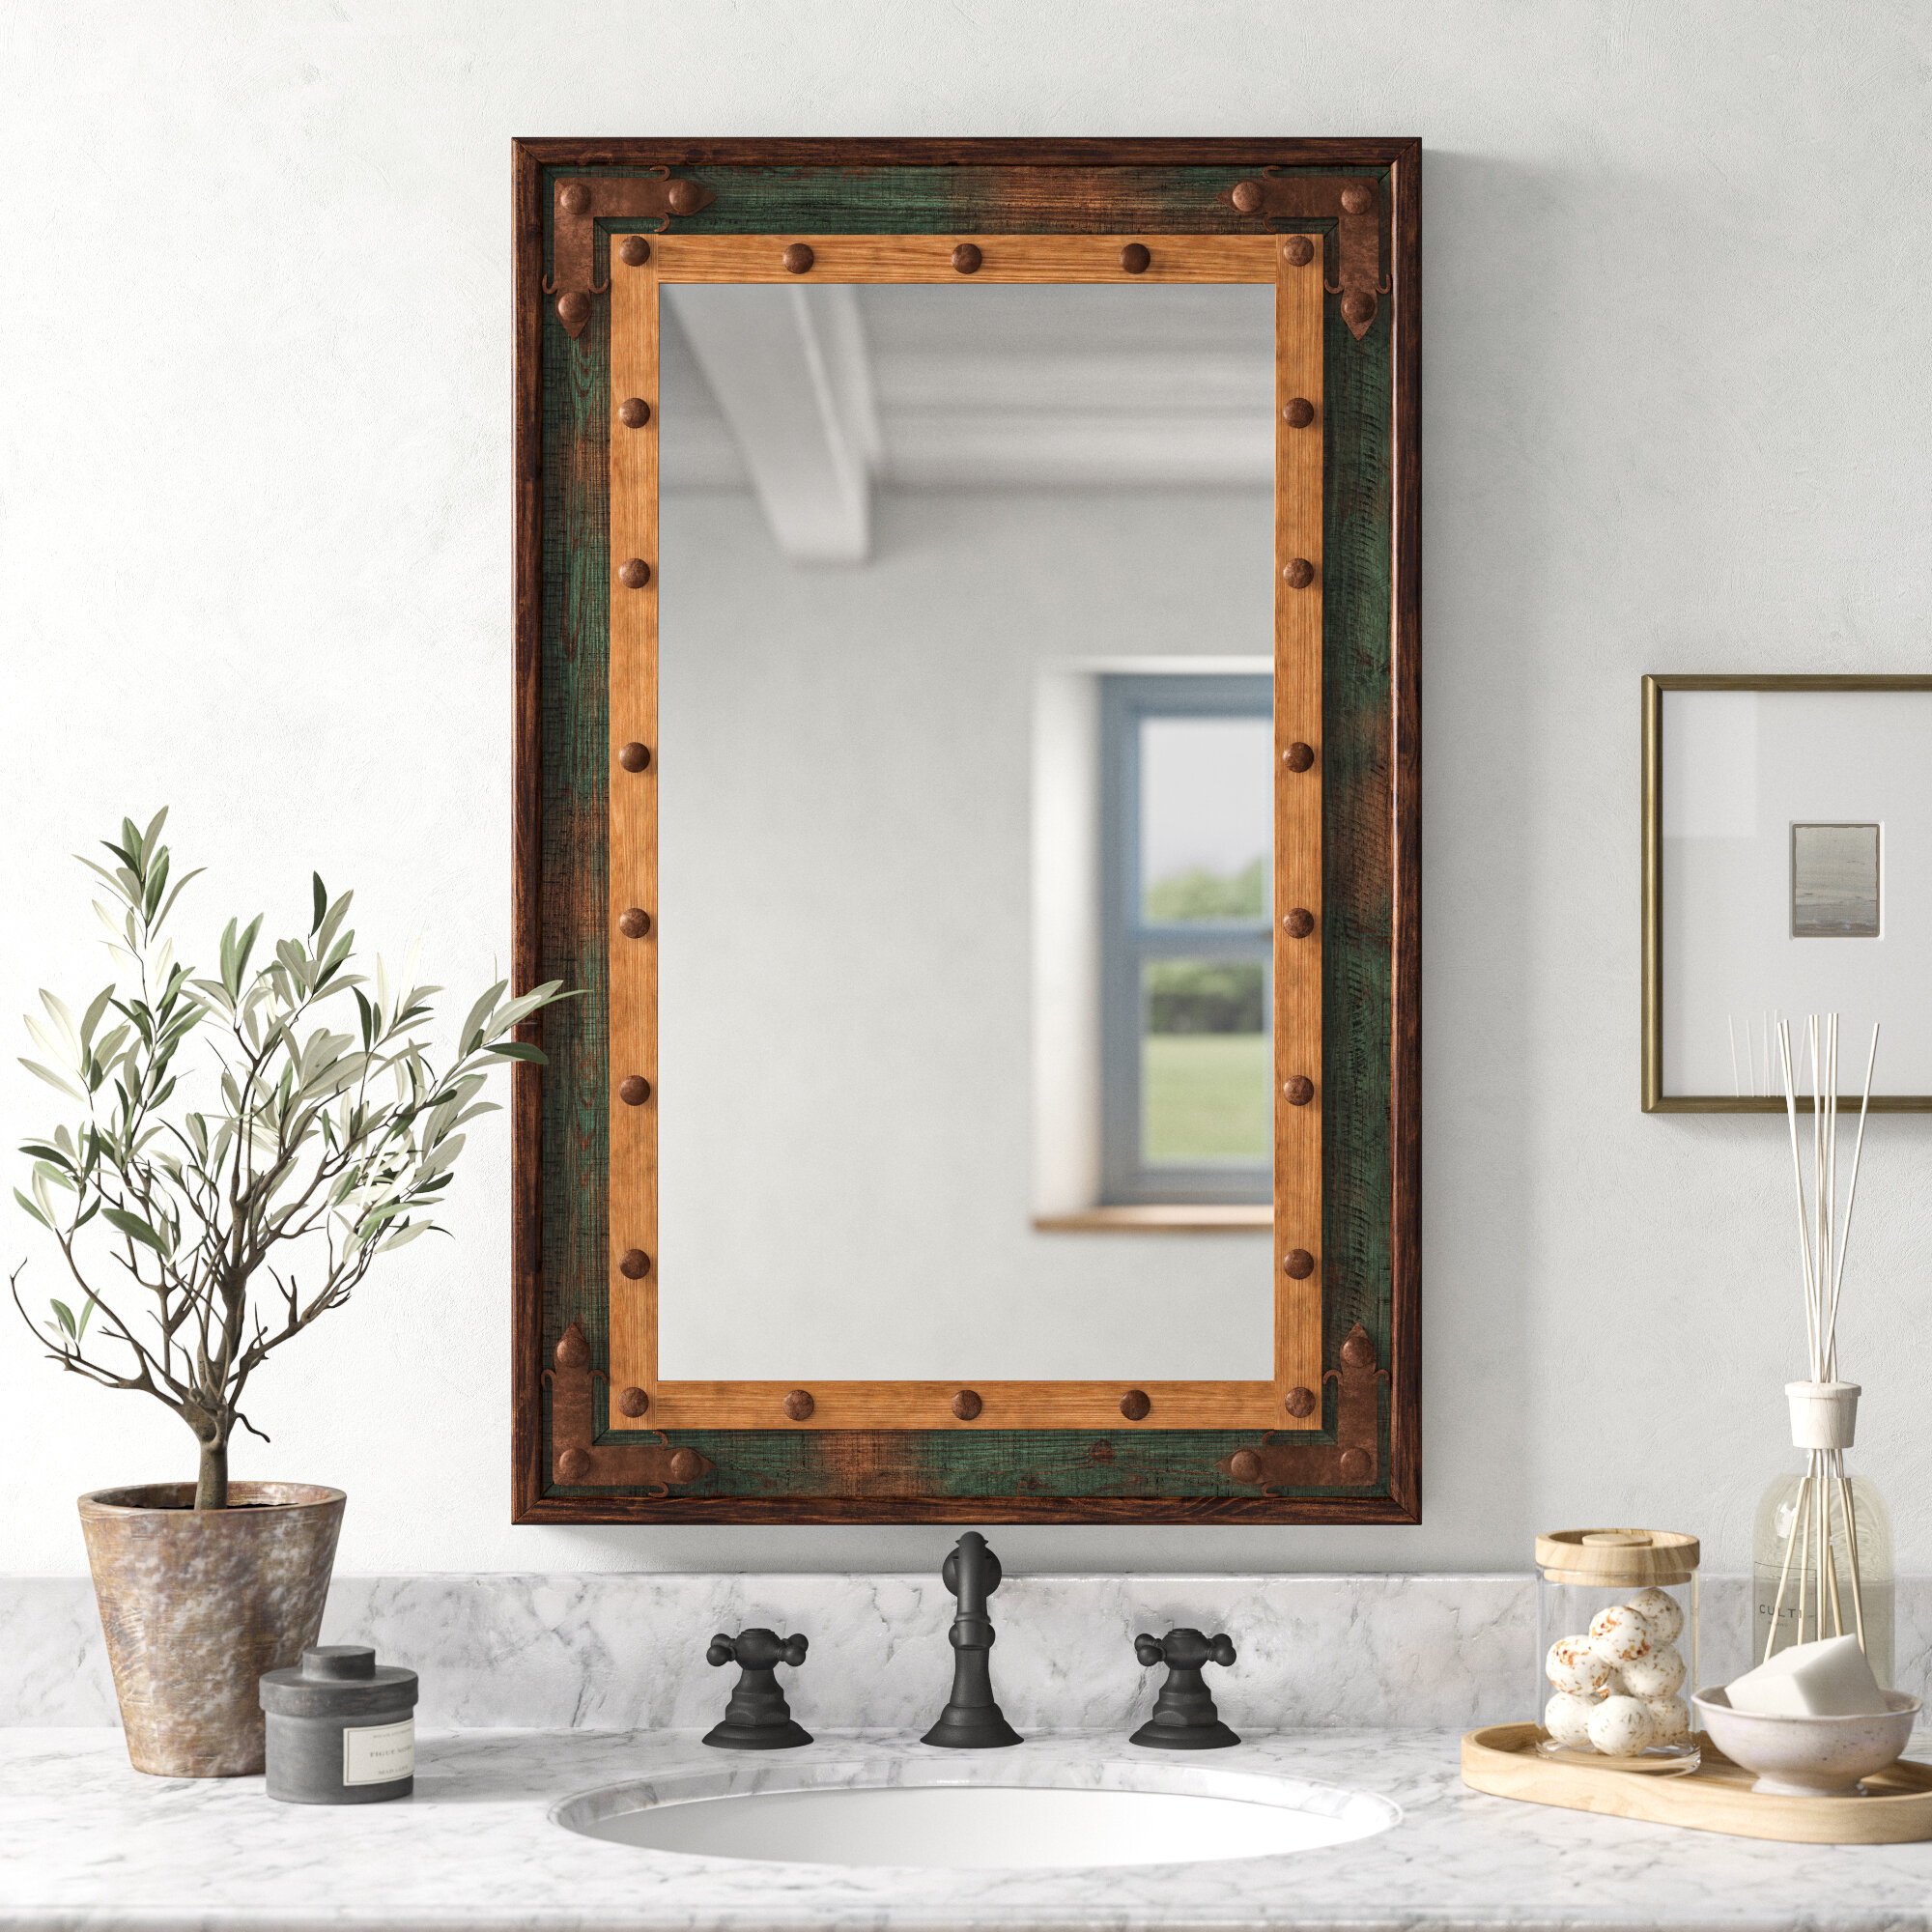 Birch Lane Gussie Rustic Distressed Bathroom Vanity Mirror Reviews Wayfair